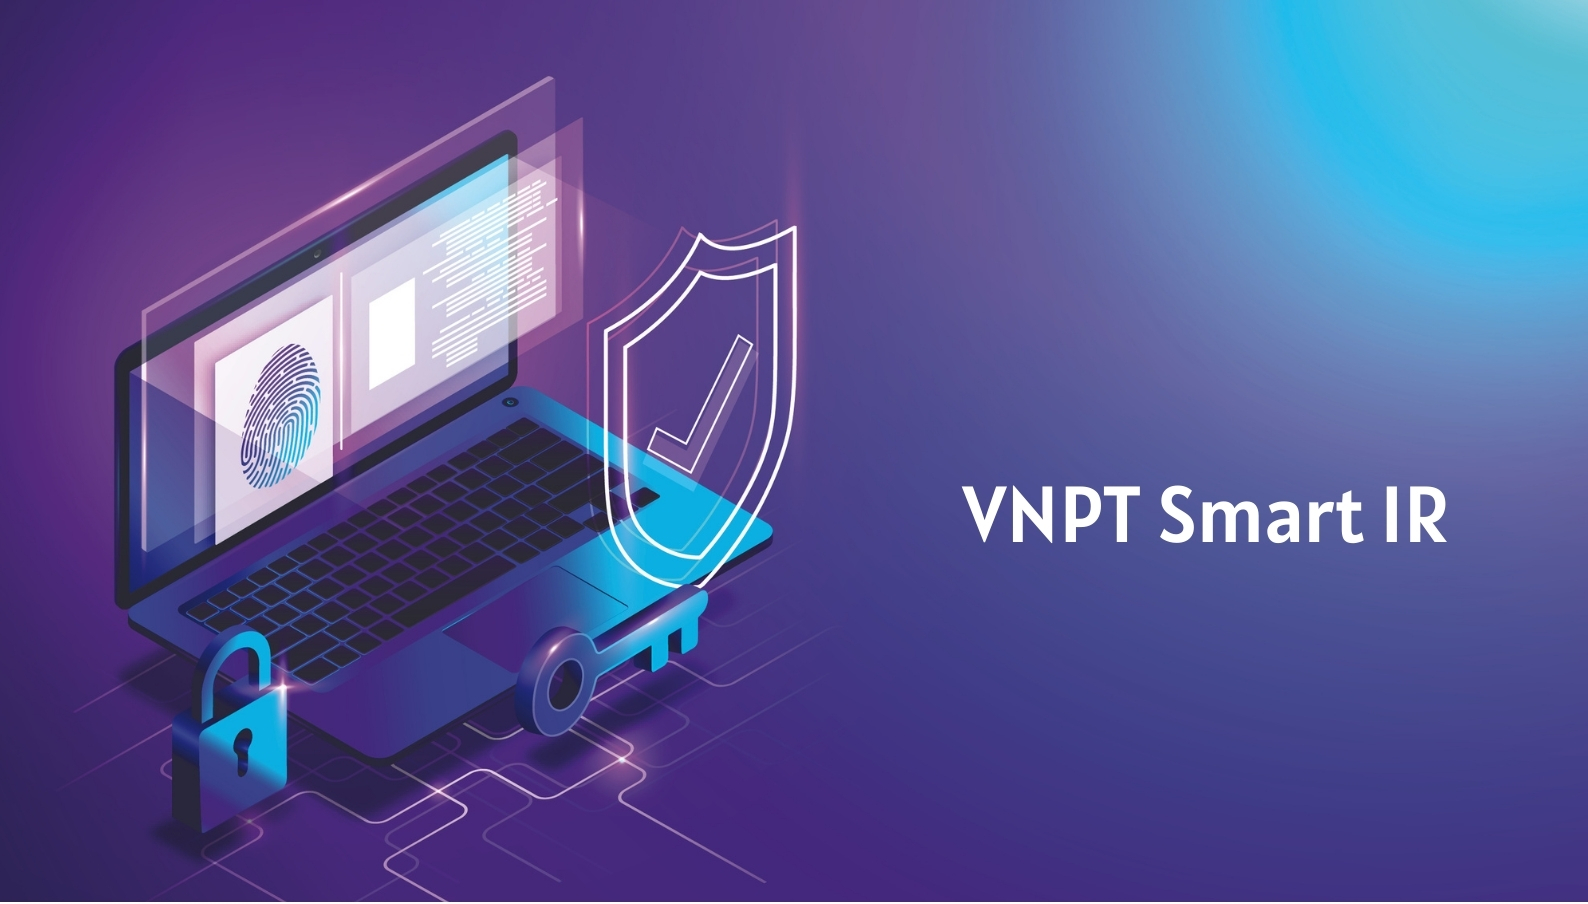 Giải pháp phát hiện và ứng cứu sự cố điểm cuối VNPT (VNPT Smart IR)